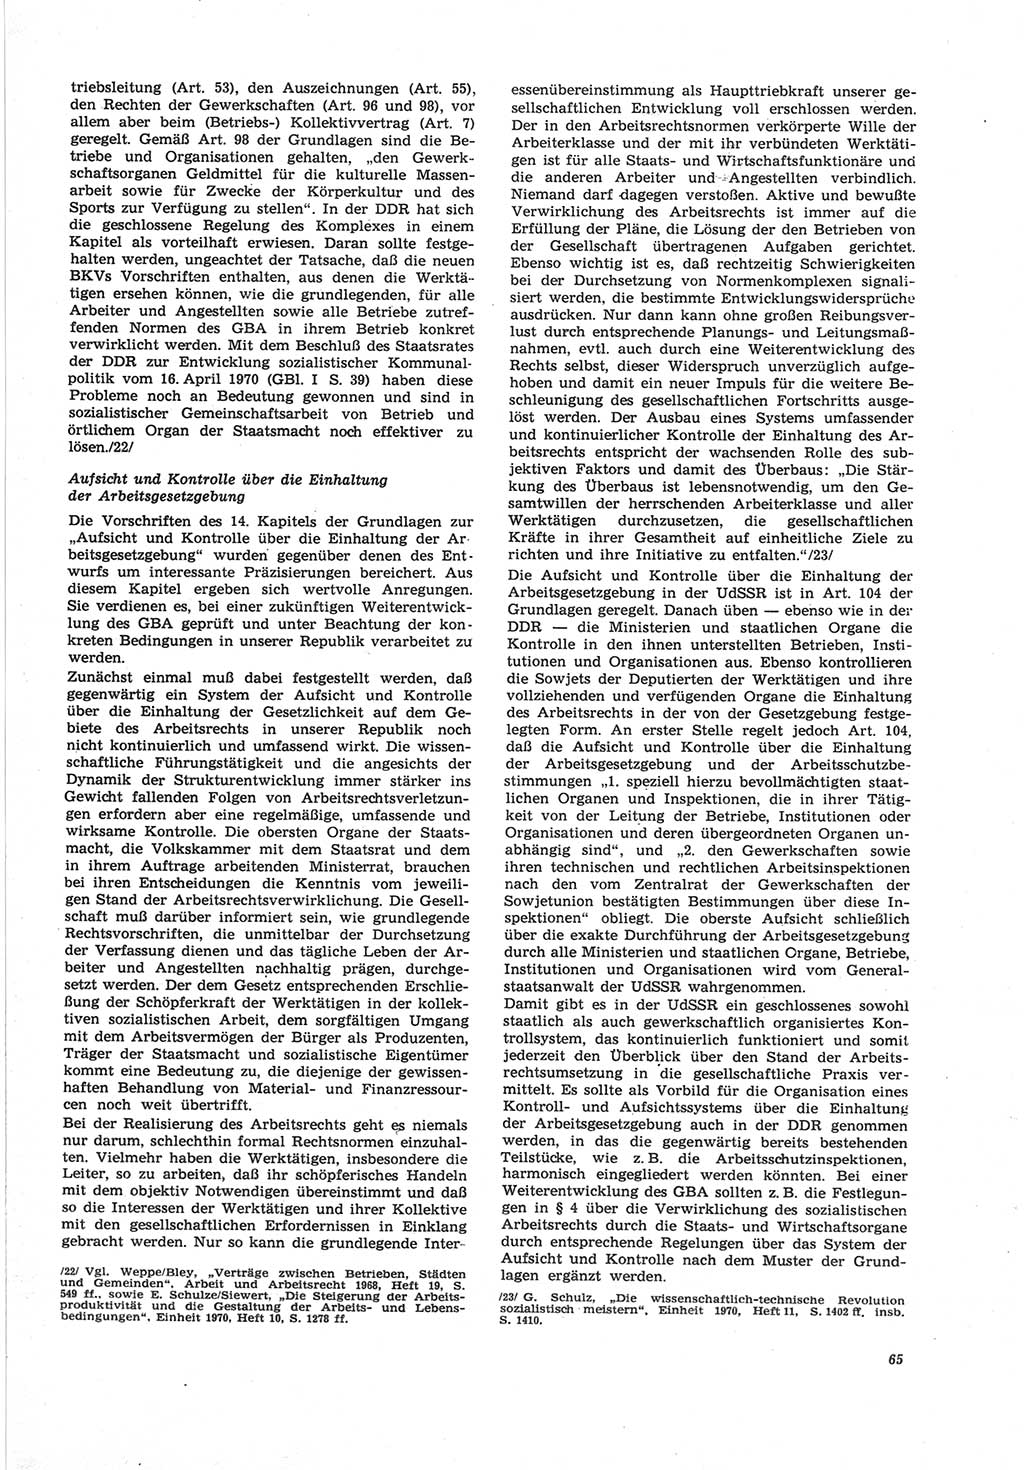 Neue Justiz (NJ), Zeitschrift für Recht und Rechtswissenschaft [Deutsche Demokratische Republik (DDR)], 25. Jahrgang 1971, Seite 65 (NJ DDR 1971, S. 65)